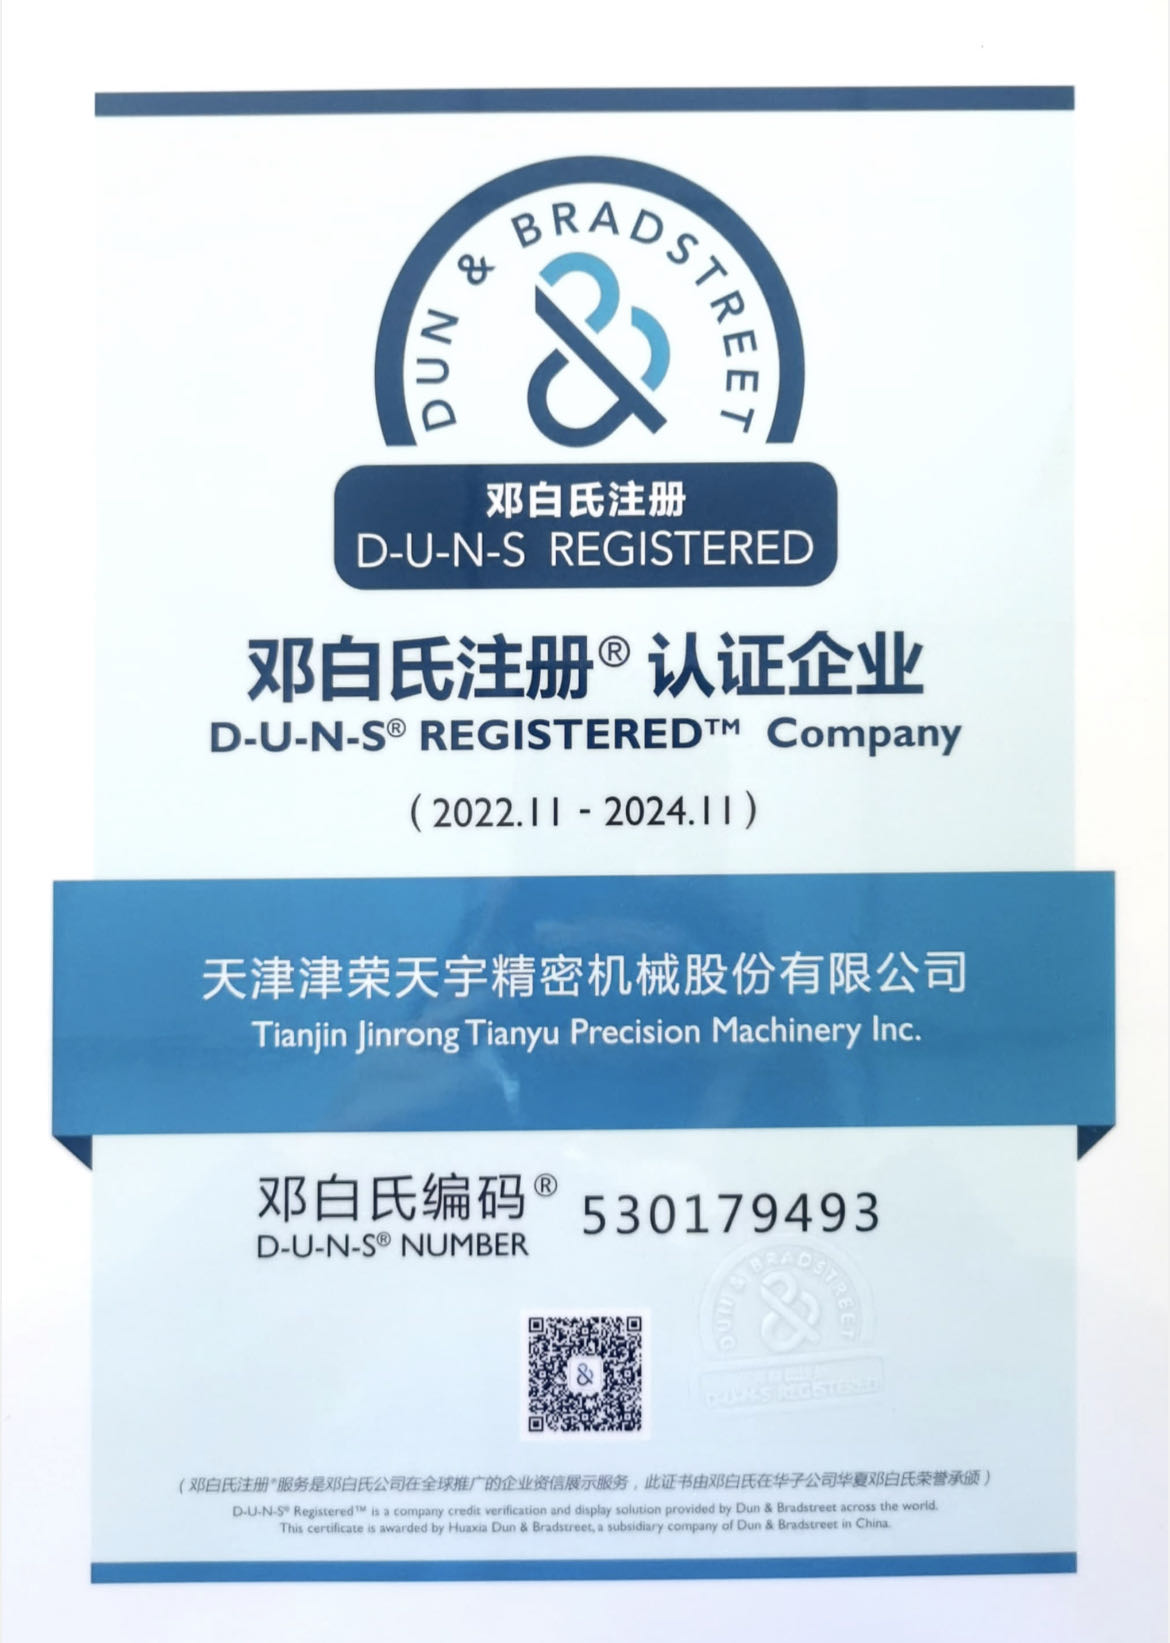 Dun & Bradstreet Certified Enterprise